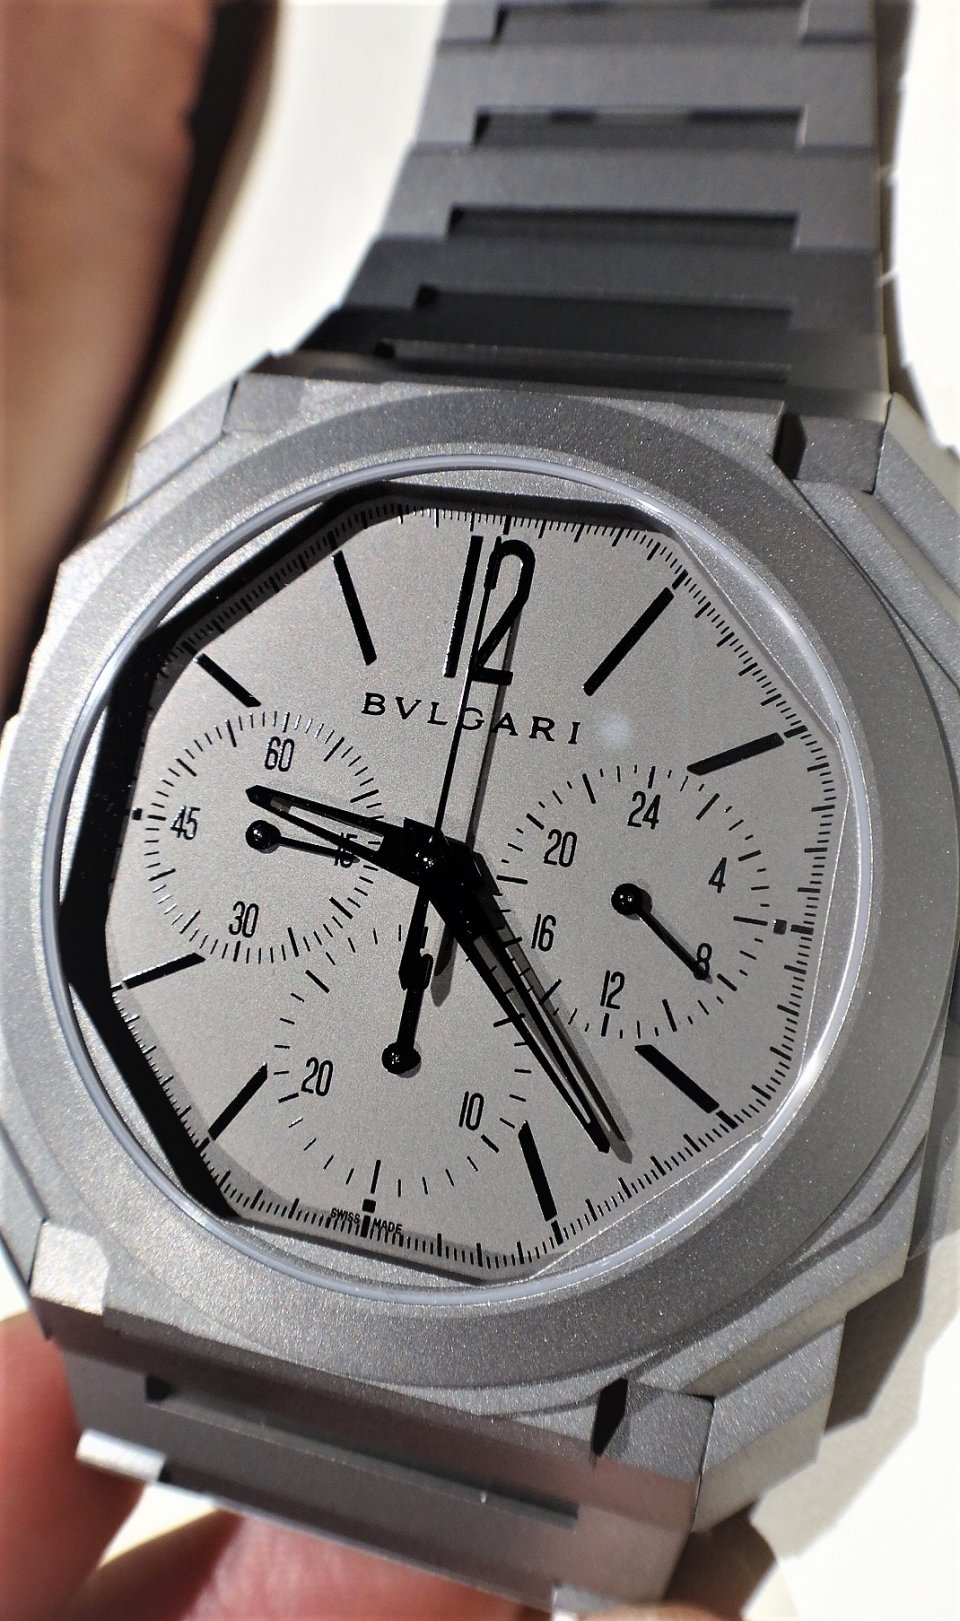 ブルガリ バーゼルワールド19での イタリアン ルネッサンス 歴史上最薄の オクトフィニッシモクロノグラフgmt オートマティック セルペンティセドゥットーリ などなどの新モデルを発表 Blog Watchmediaonline ウォッチ メディア オンライン 時計